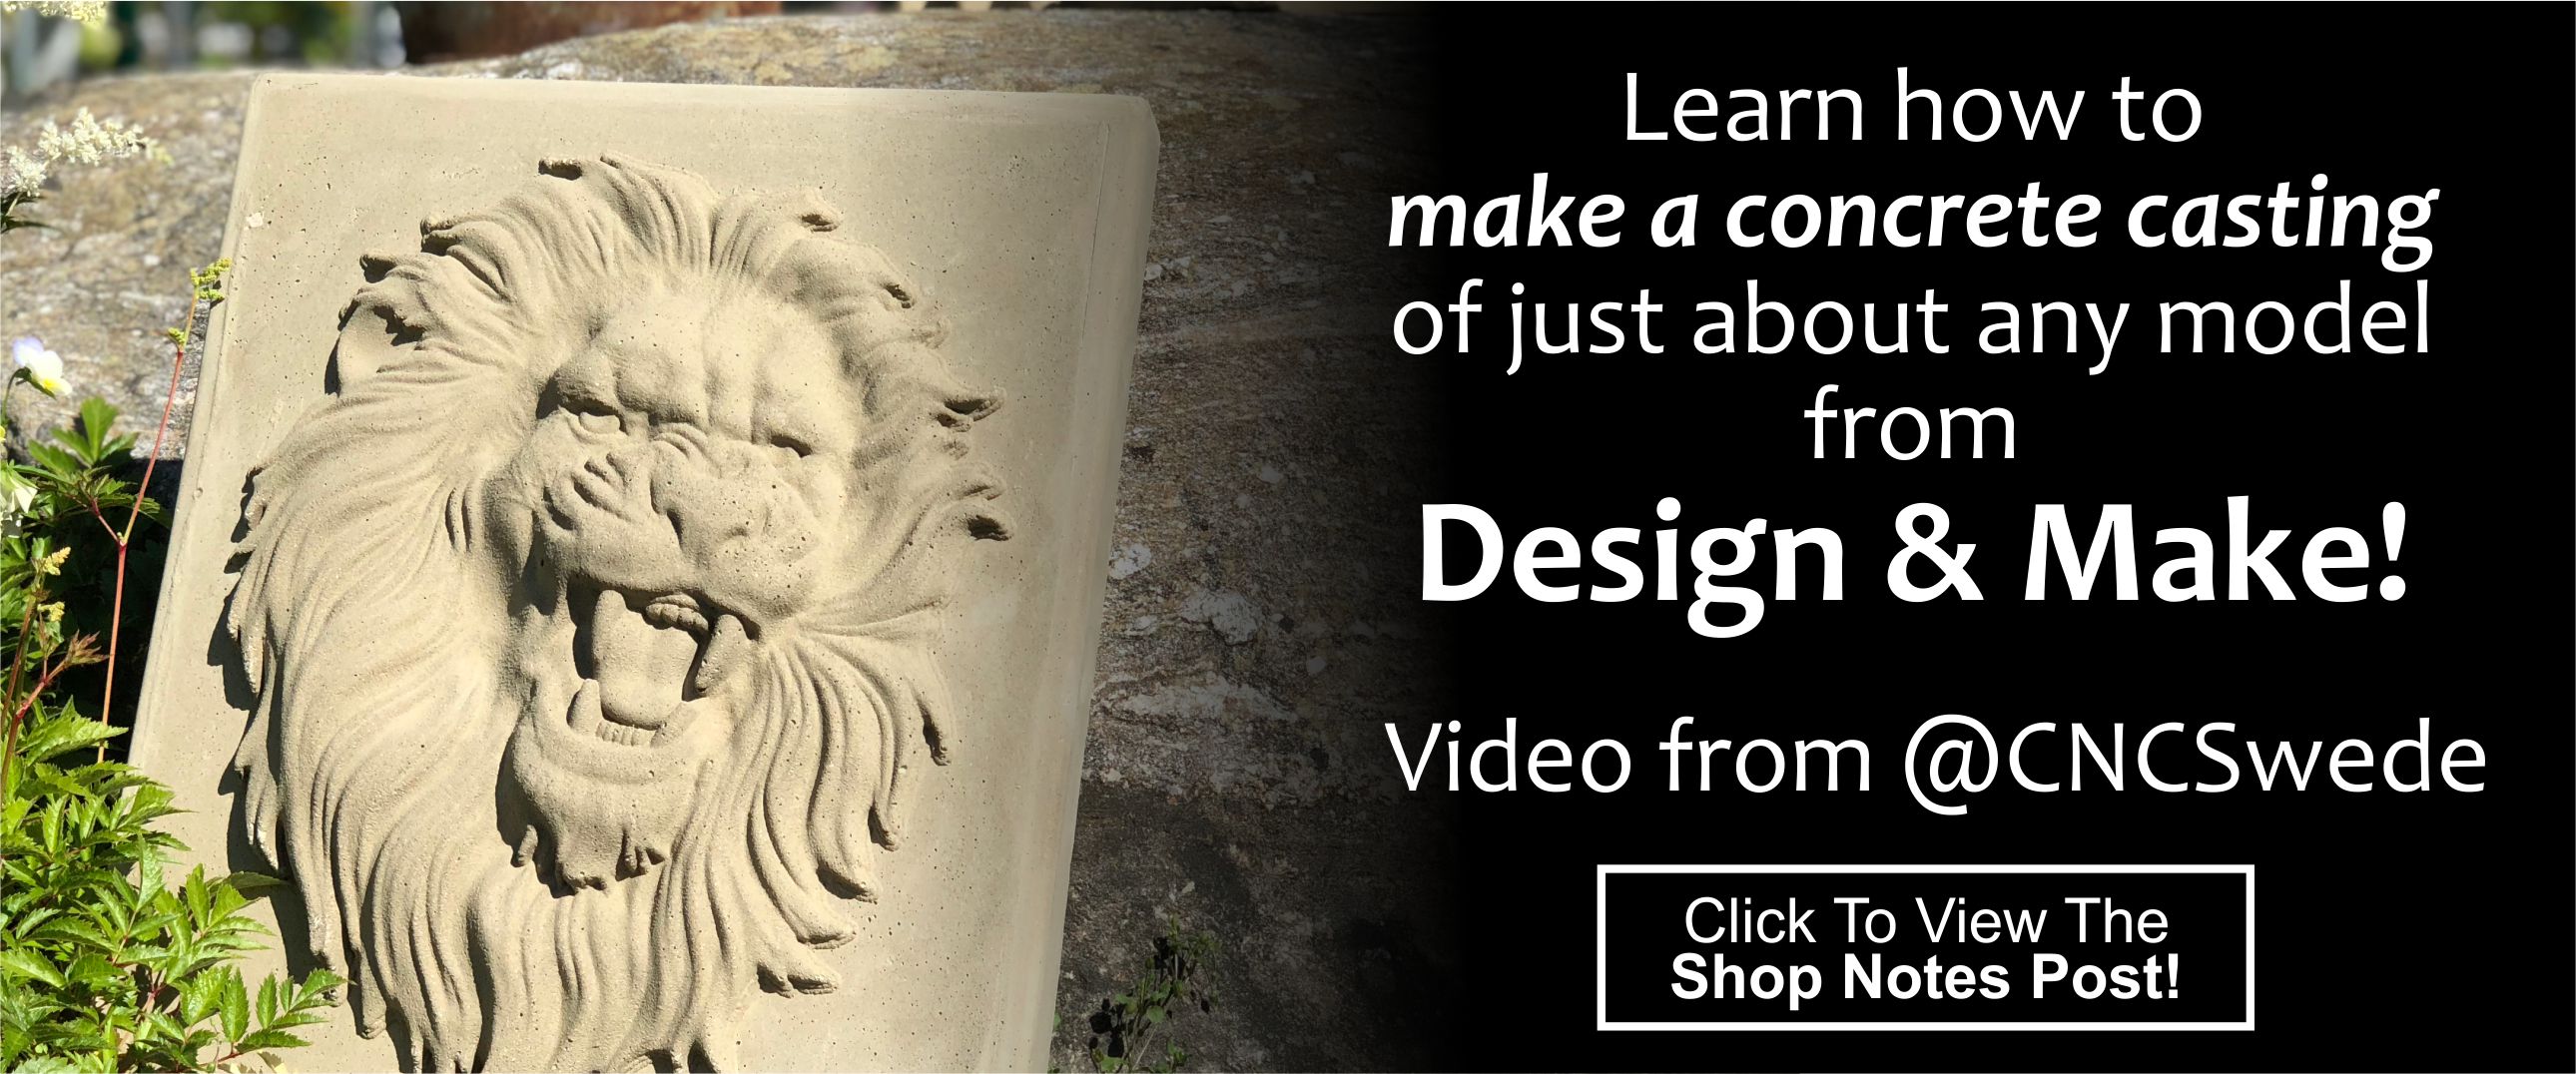 Concrete Casting CNC Design and Make